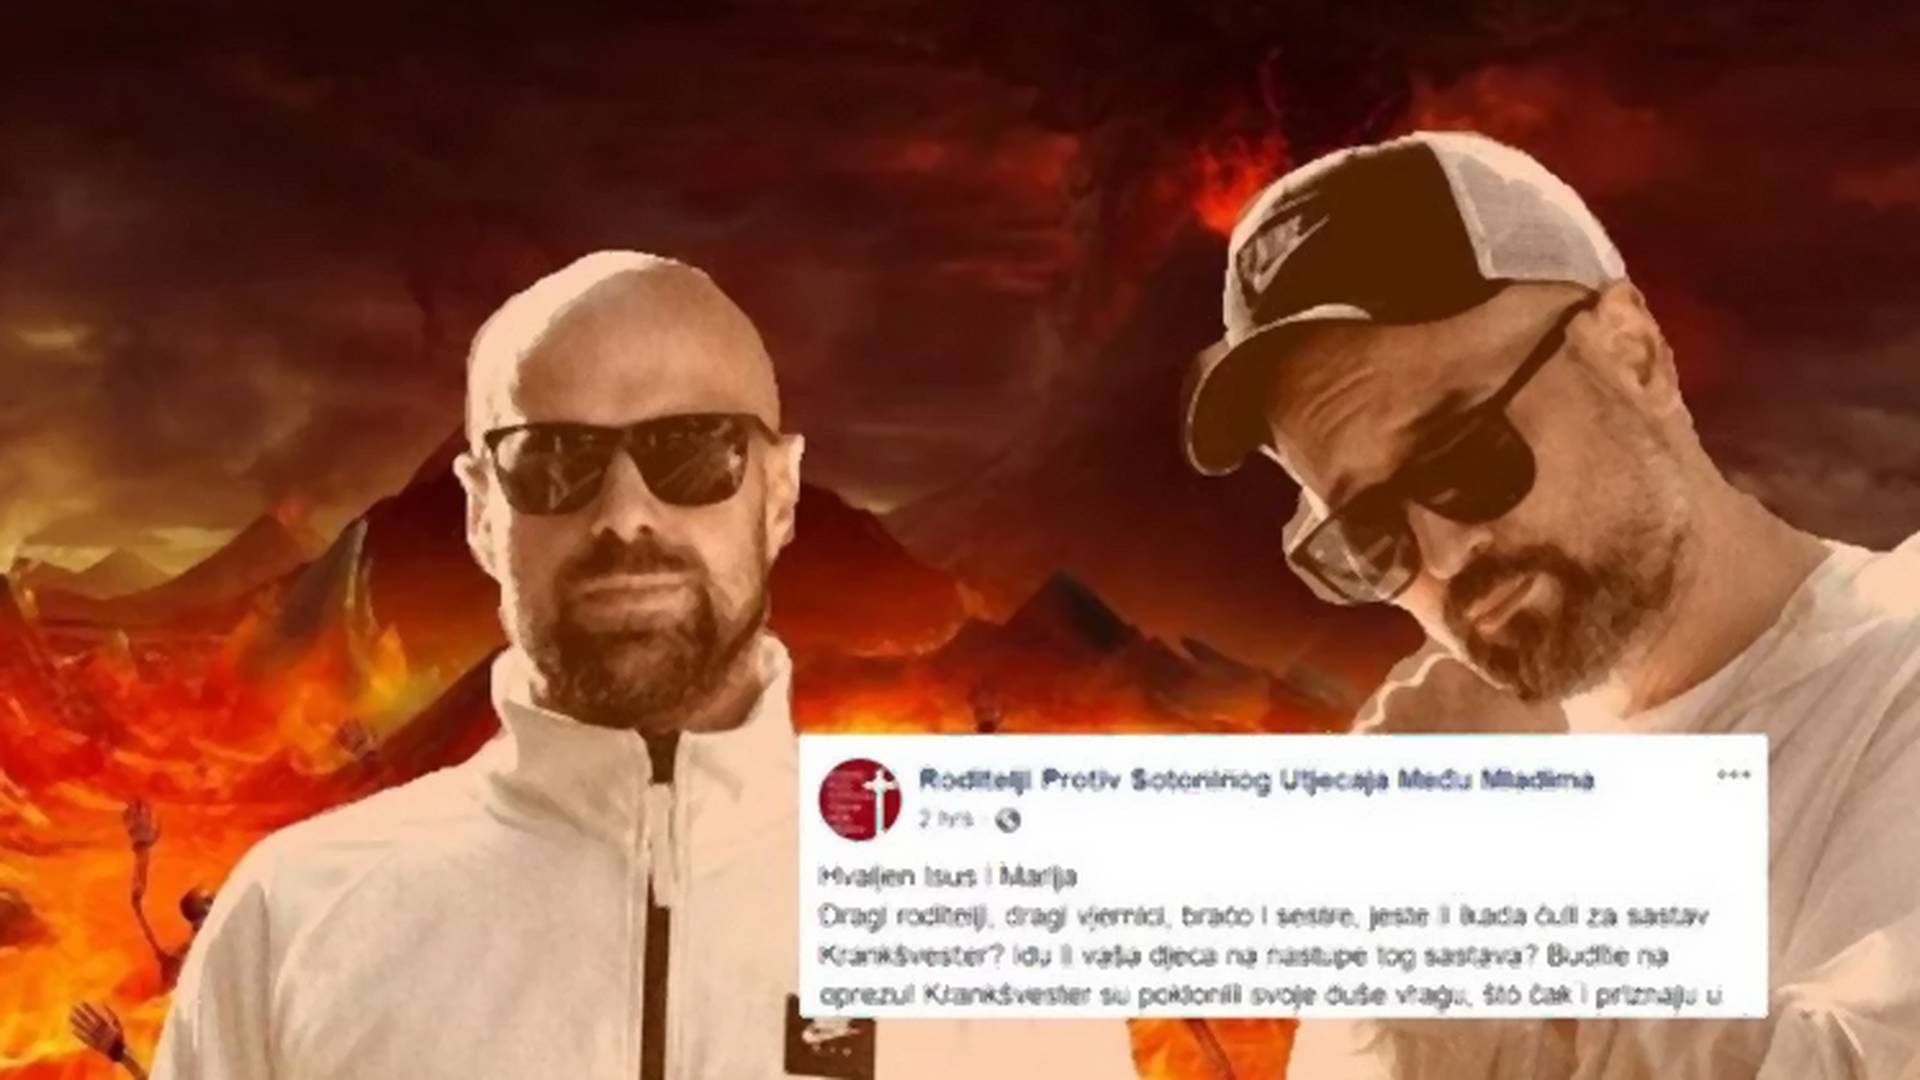 Hrvatski rep duo, Krankšvester, prodao je dušu đavolu - kako kažu roditelji sa jedne fejsbuk stranice